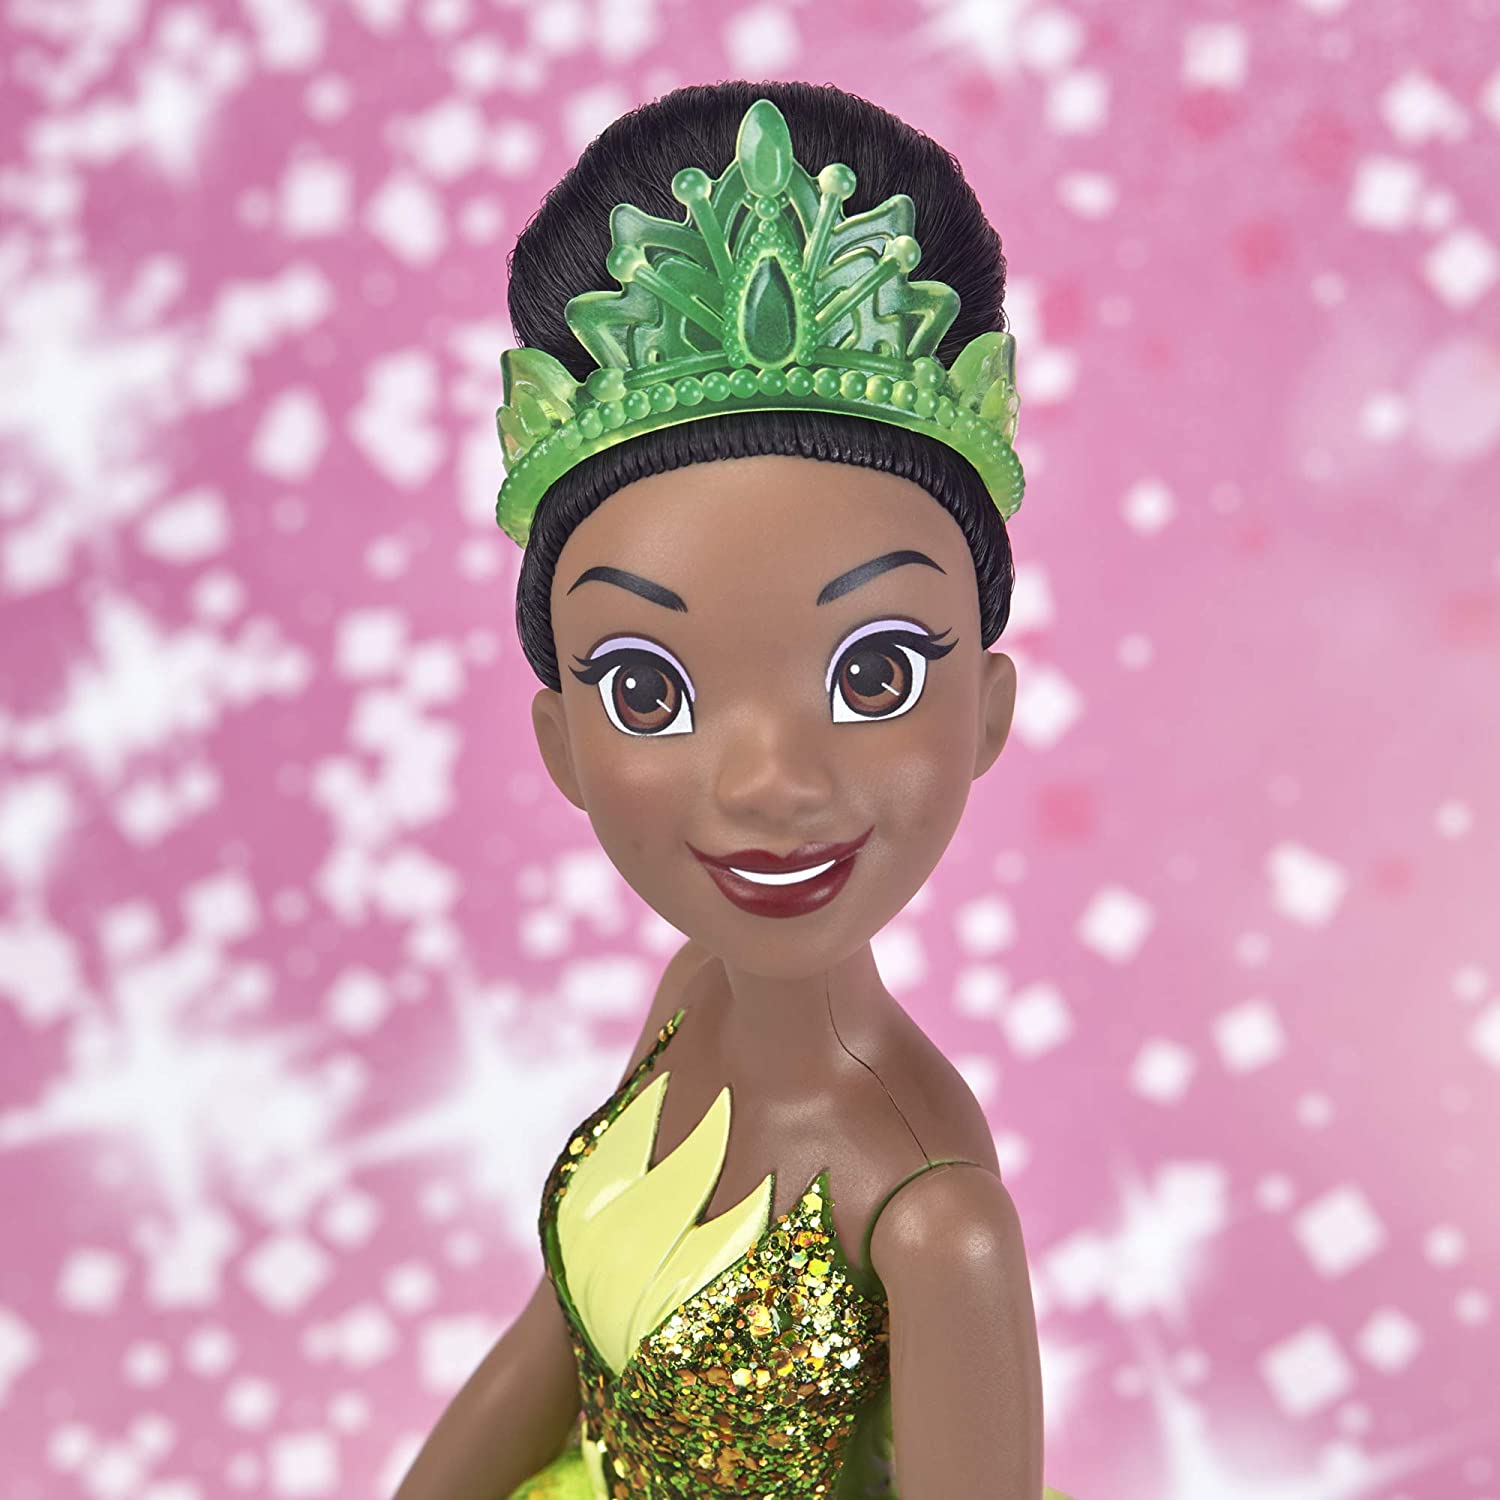 Disney Princess Royal Shimmer Tiana